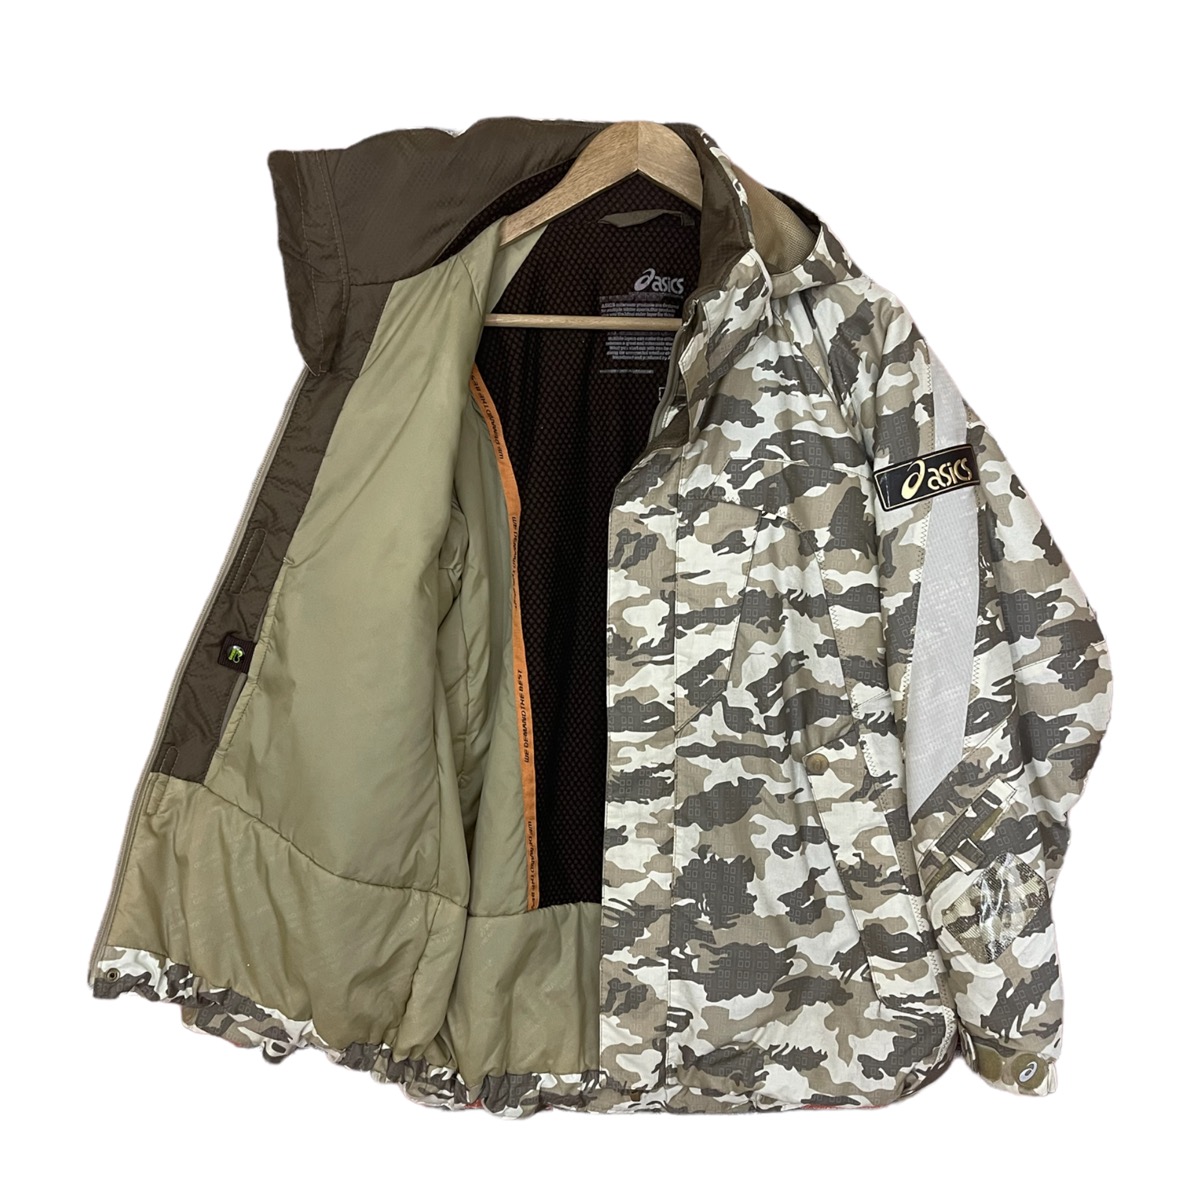 Asics jacket cold weather jacket - 3